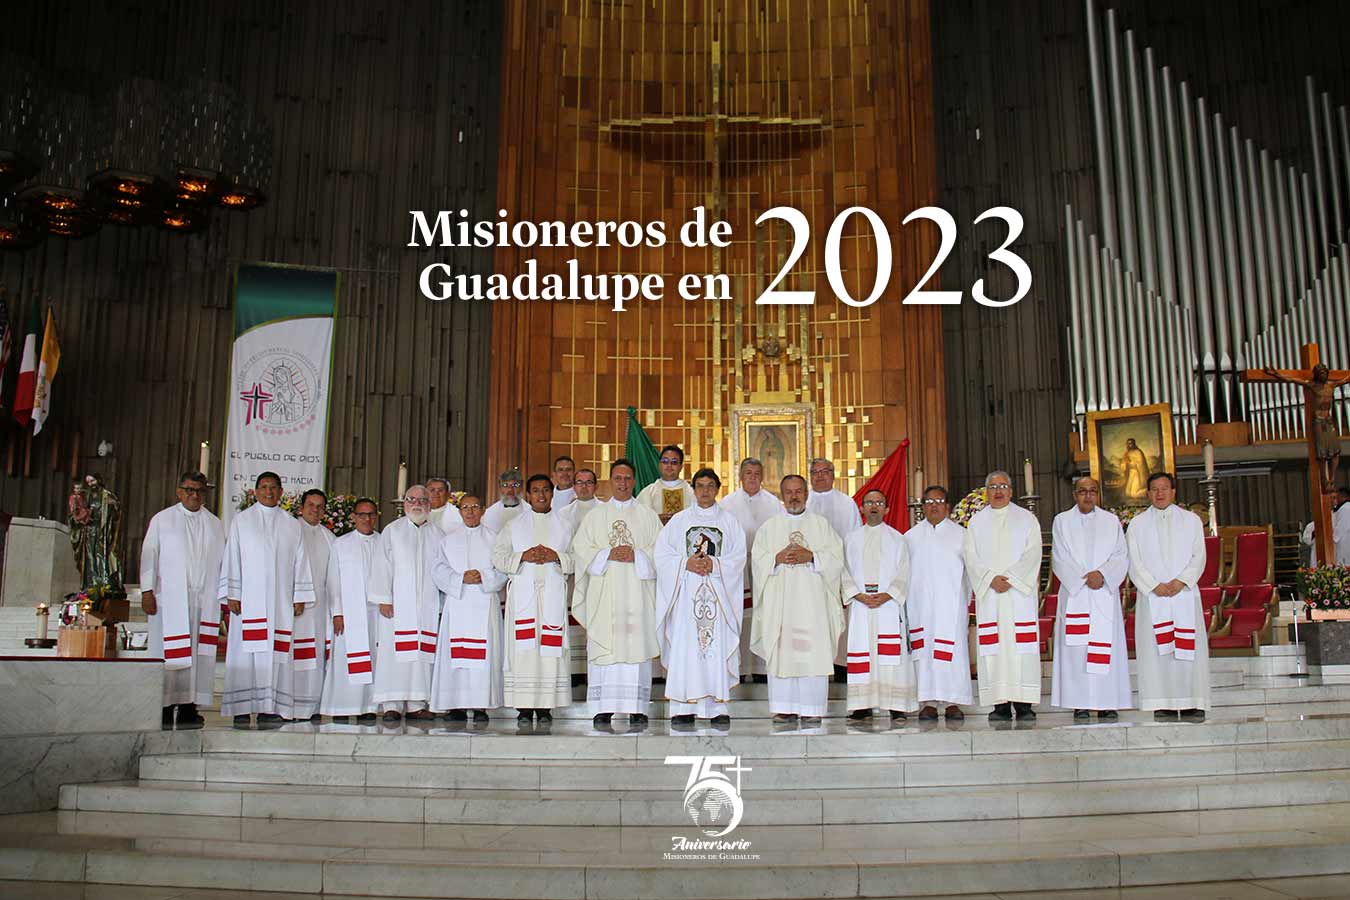 Misioneros de Guadalupe en 2023